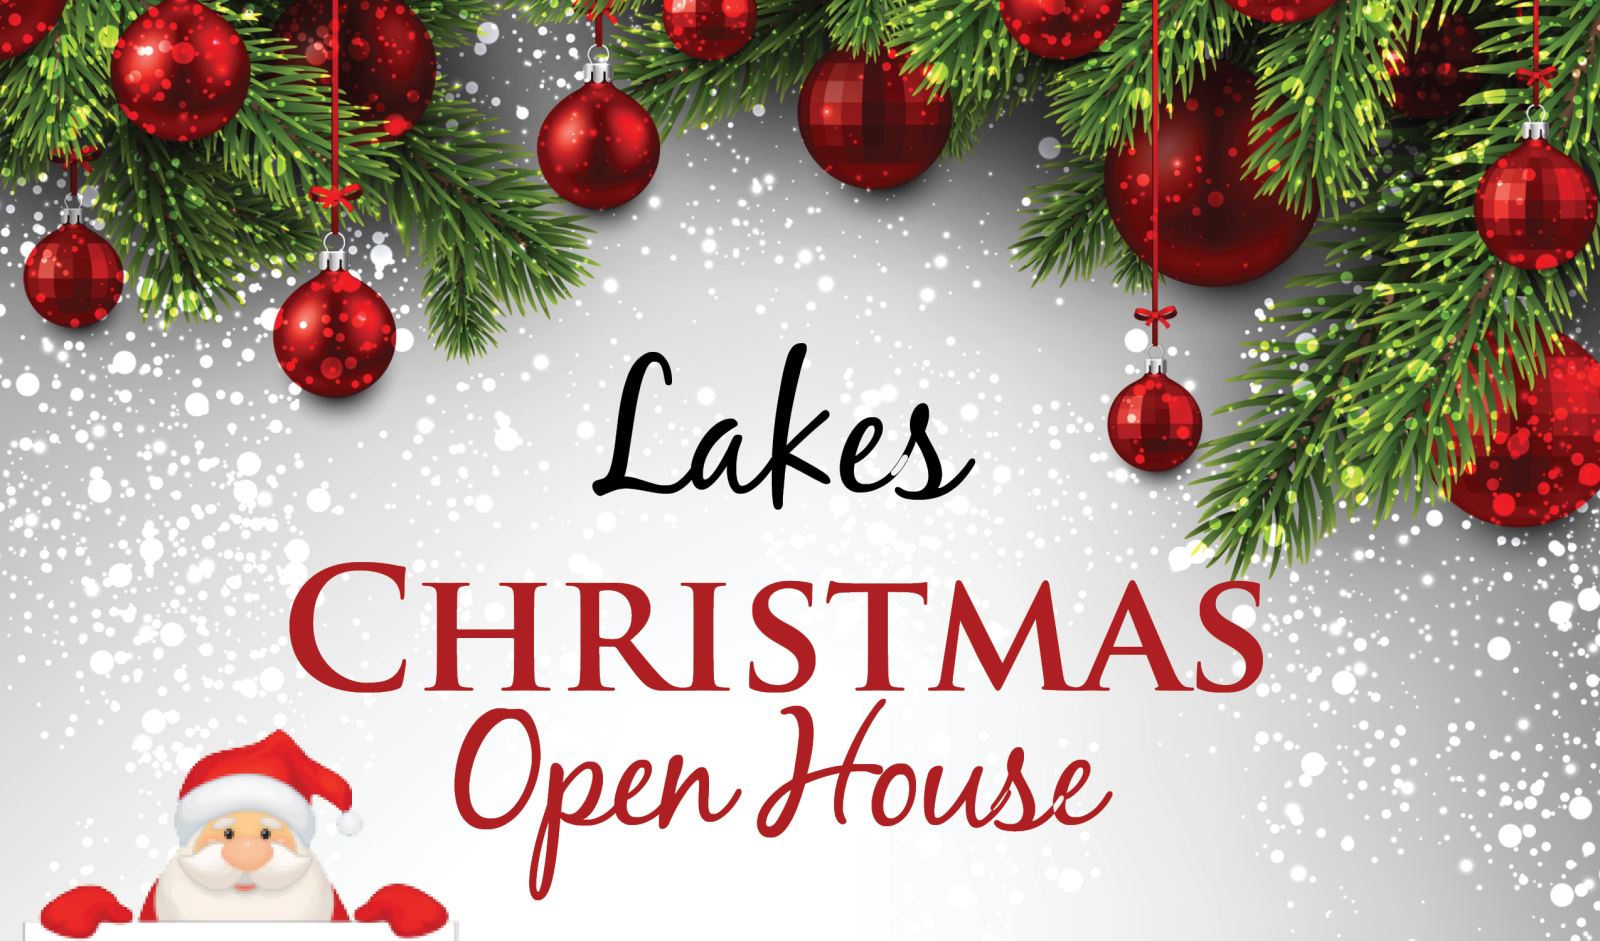 Lakes | Christmas Open House